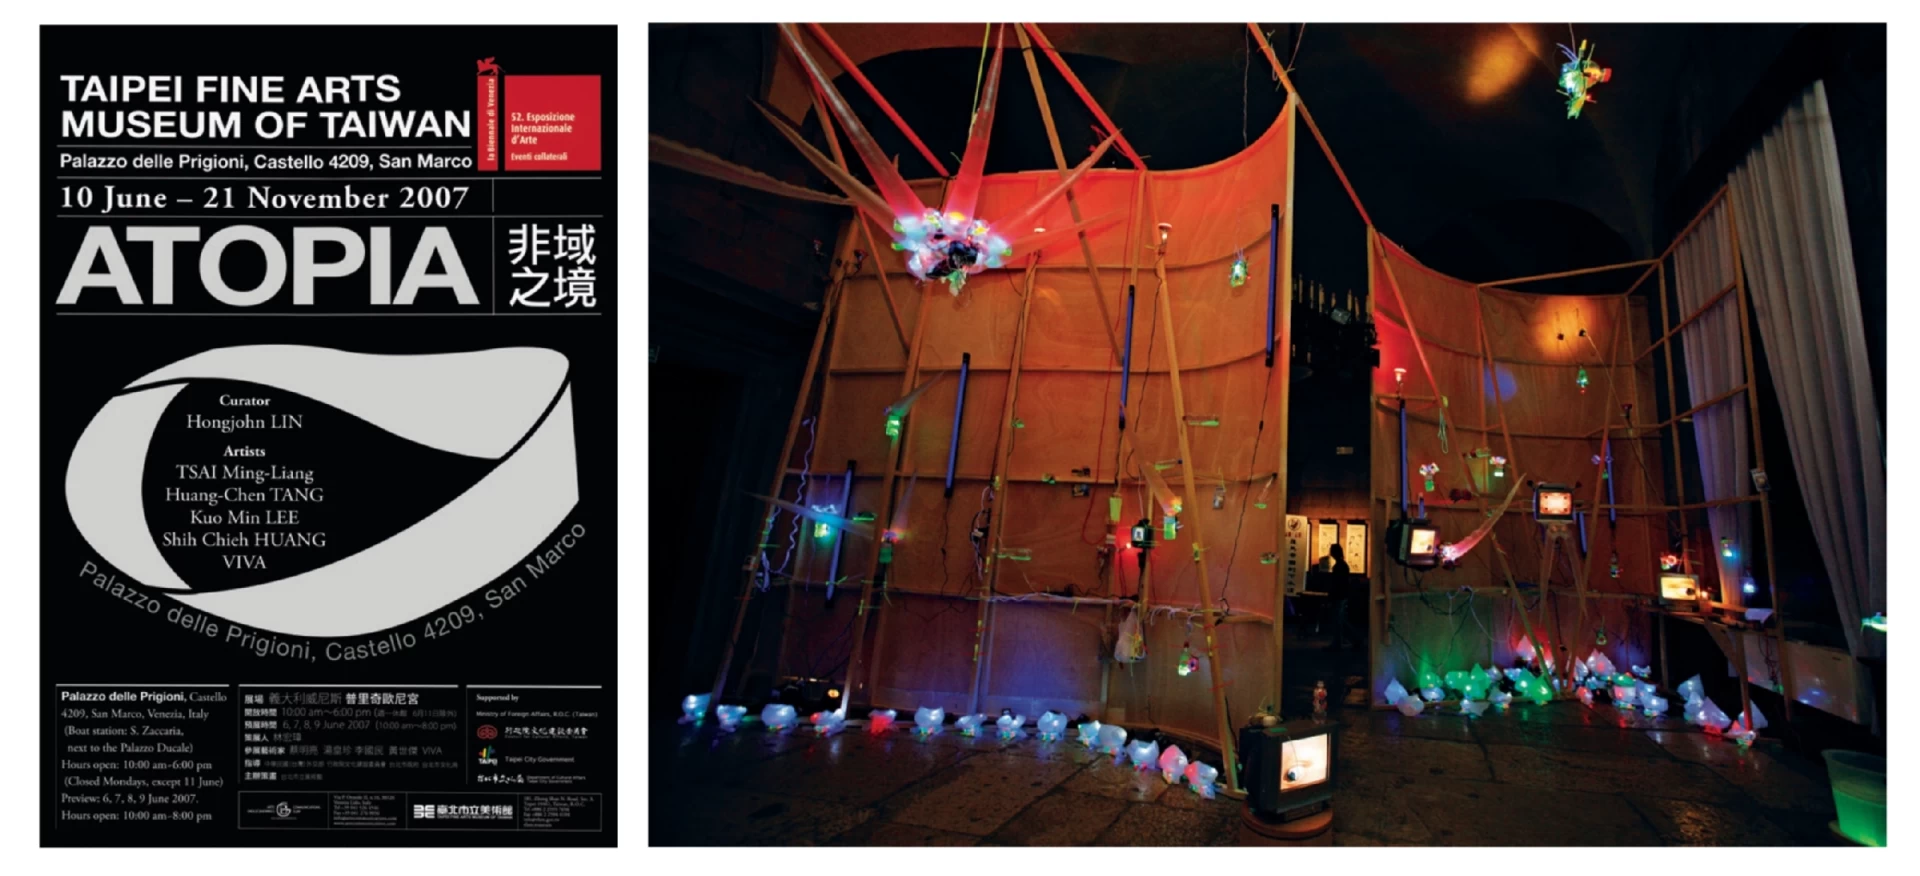 第52屆威尼斯雙年展台灣館「非域之境」海報及展場大廳一景，前景為黃世傑作品 《EVX-07》、中間為VIVA作品，2007.06-圖片